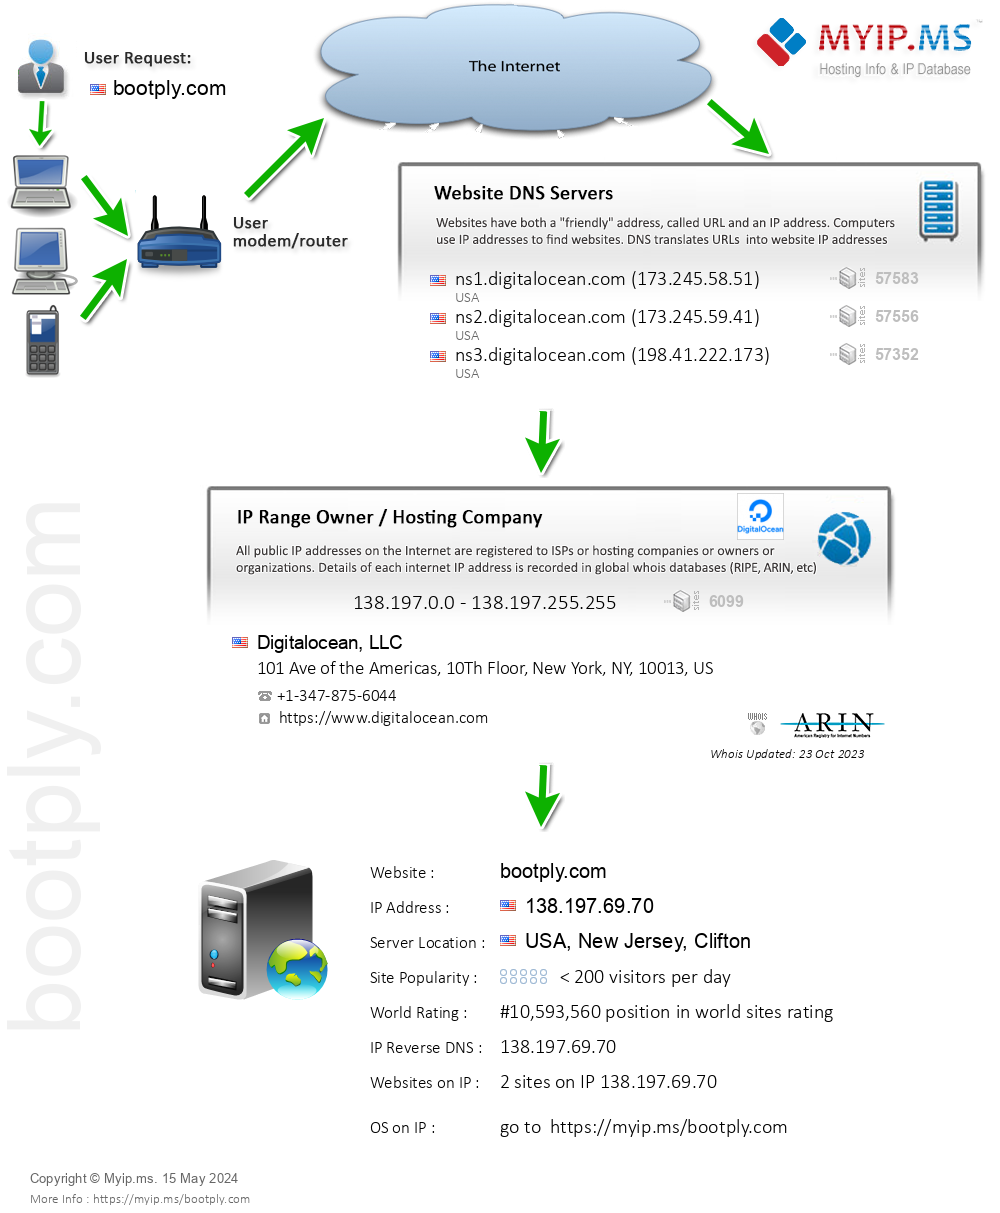 Bootply.com - Website Hosting Visual IP Diagram